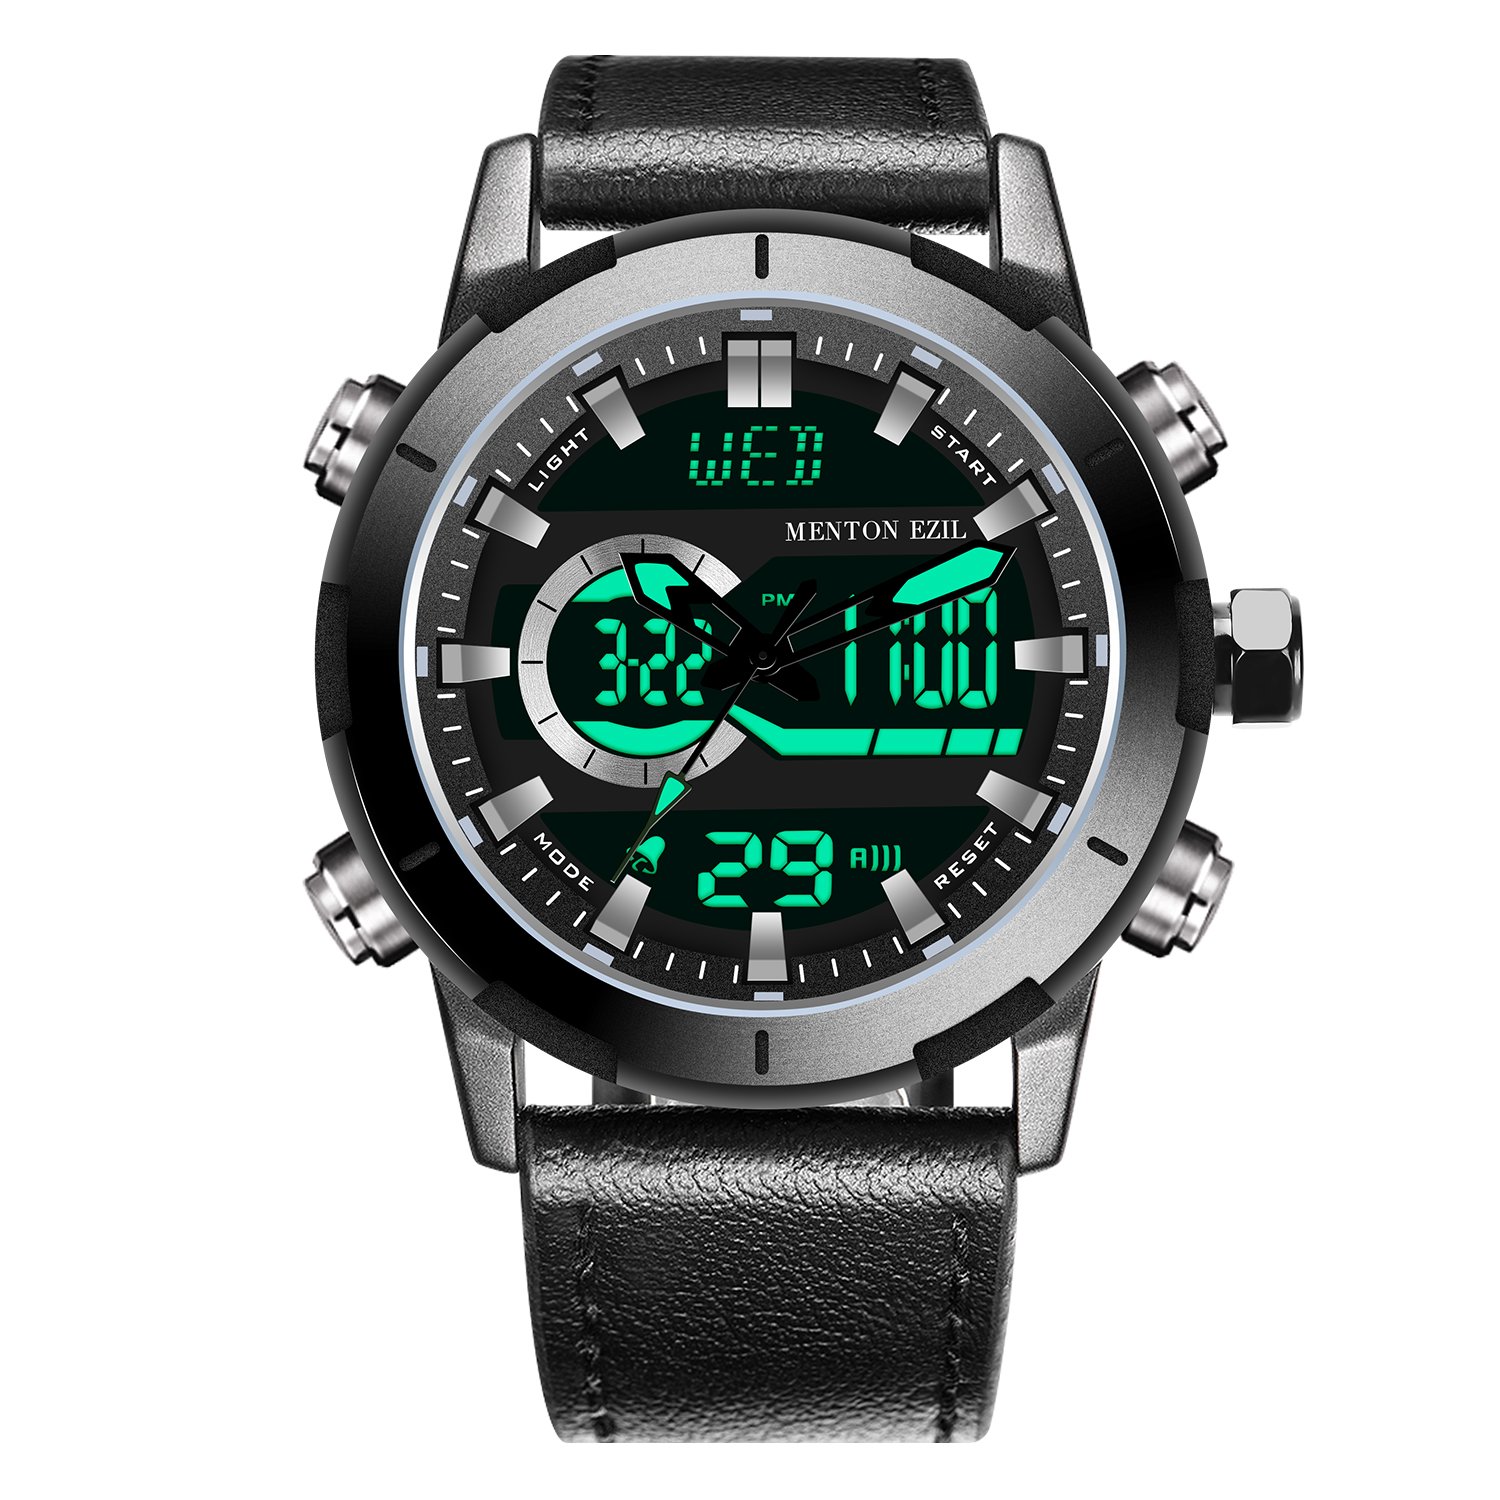 安いメンズ腕時計のおすすめ32選 コスパ最強ランキング 最新版 Rank1 ランク1 人気ランキングまとめサイト 国内最大級